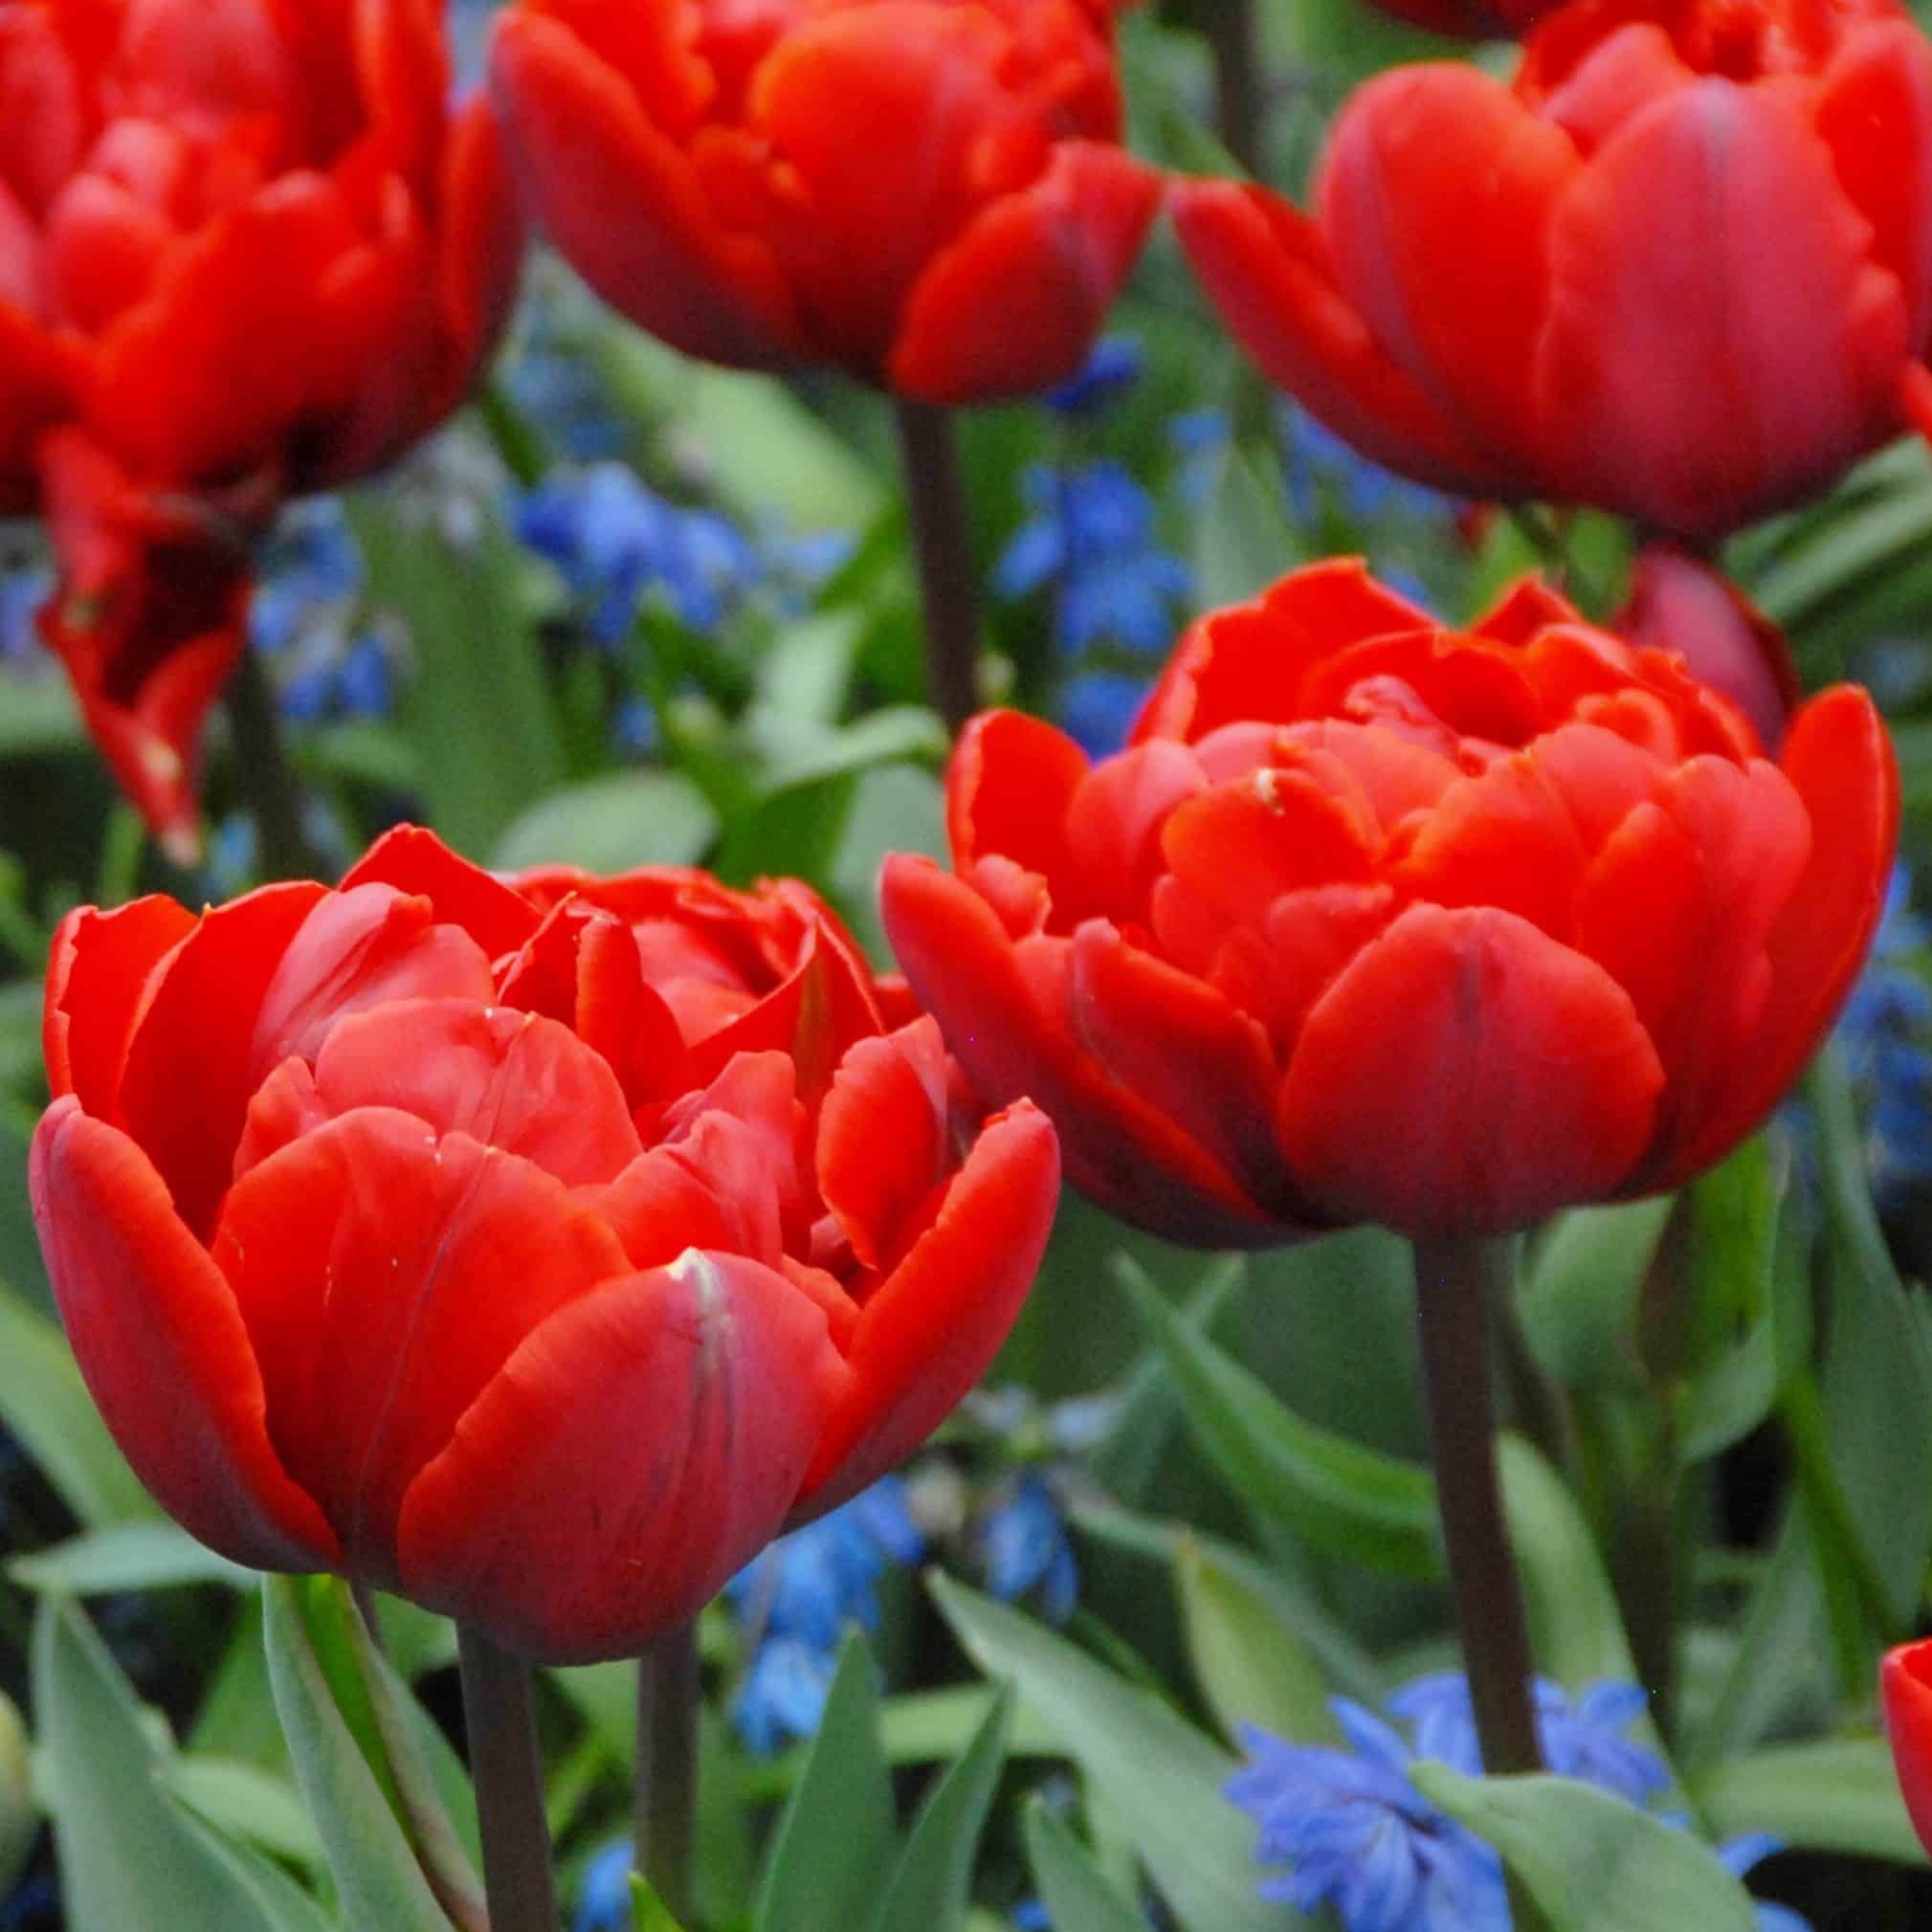 Tulipan 'Red Princess'